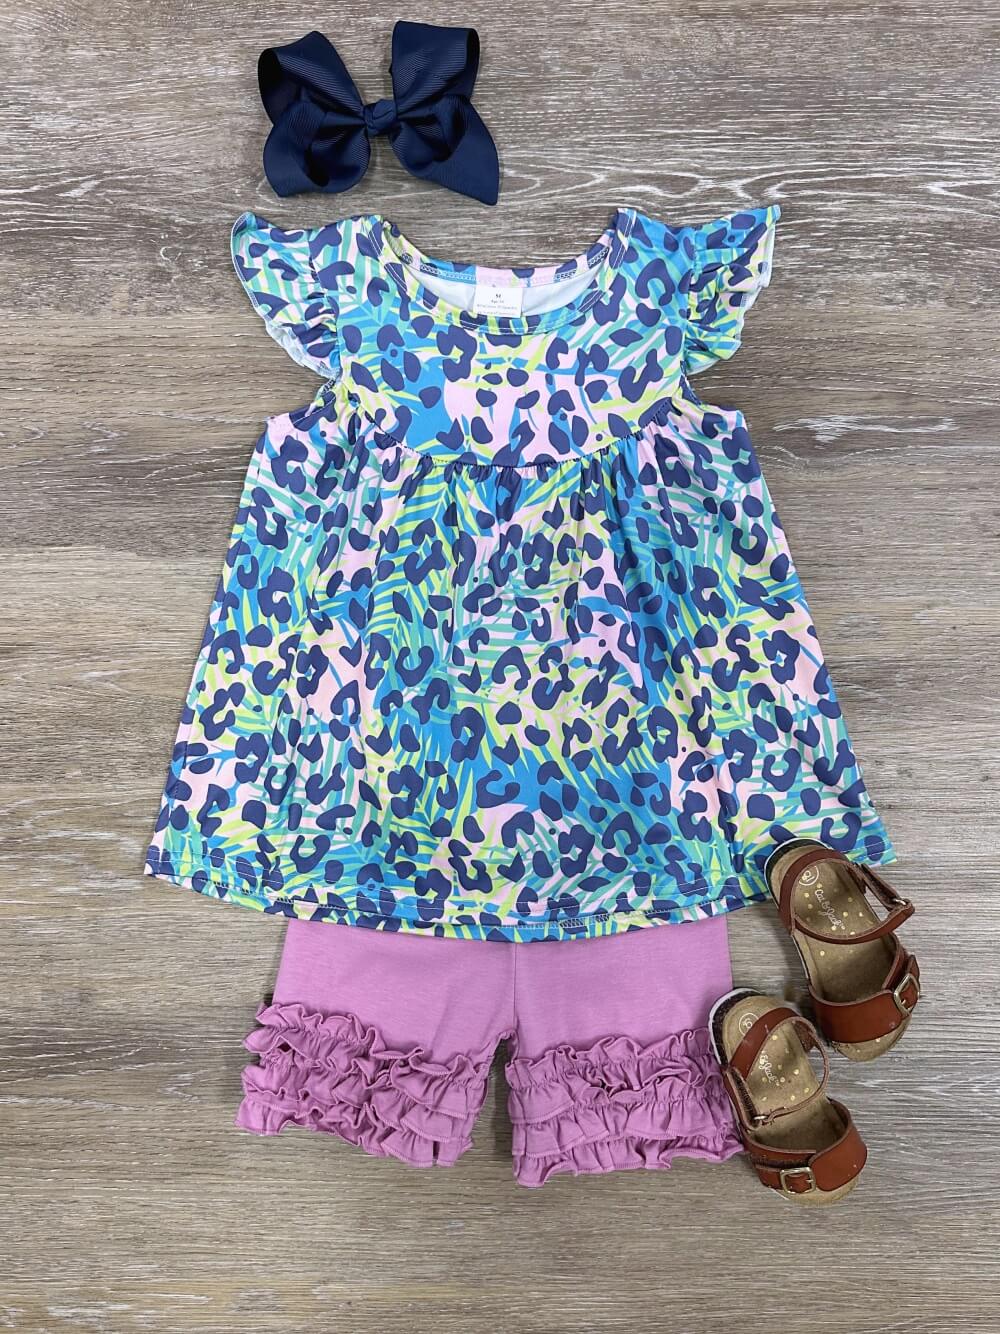 Cheetah Blue Tunic Top & Ruffle Shorts Girls Outfit